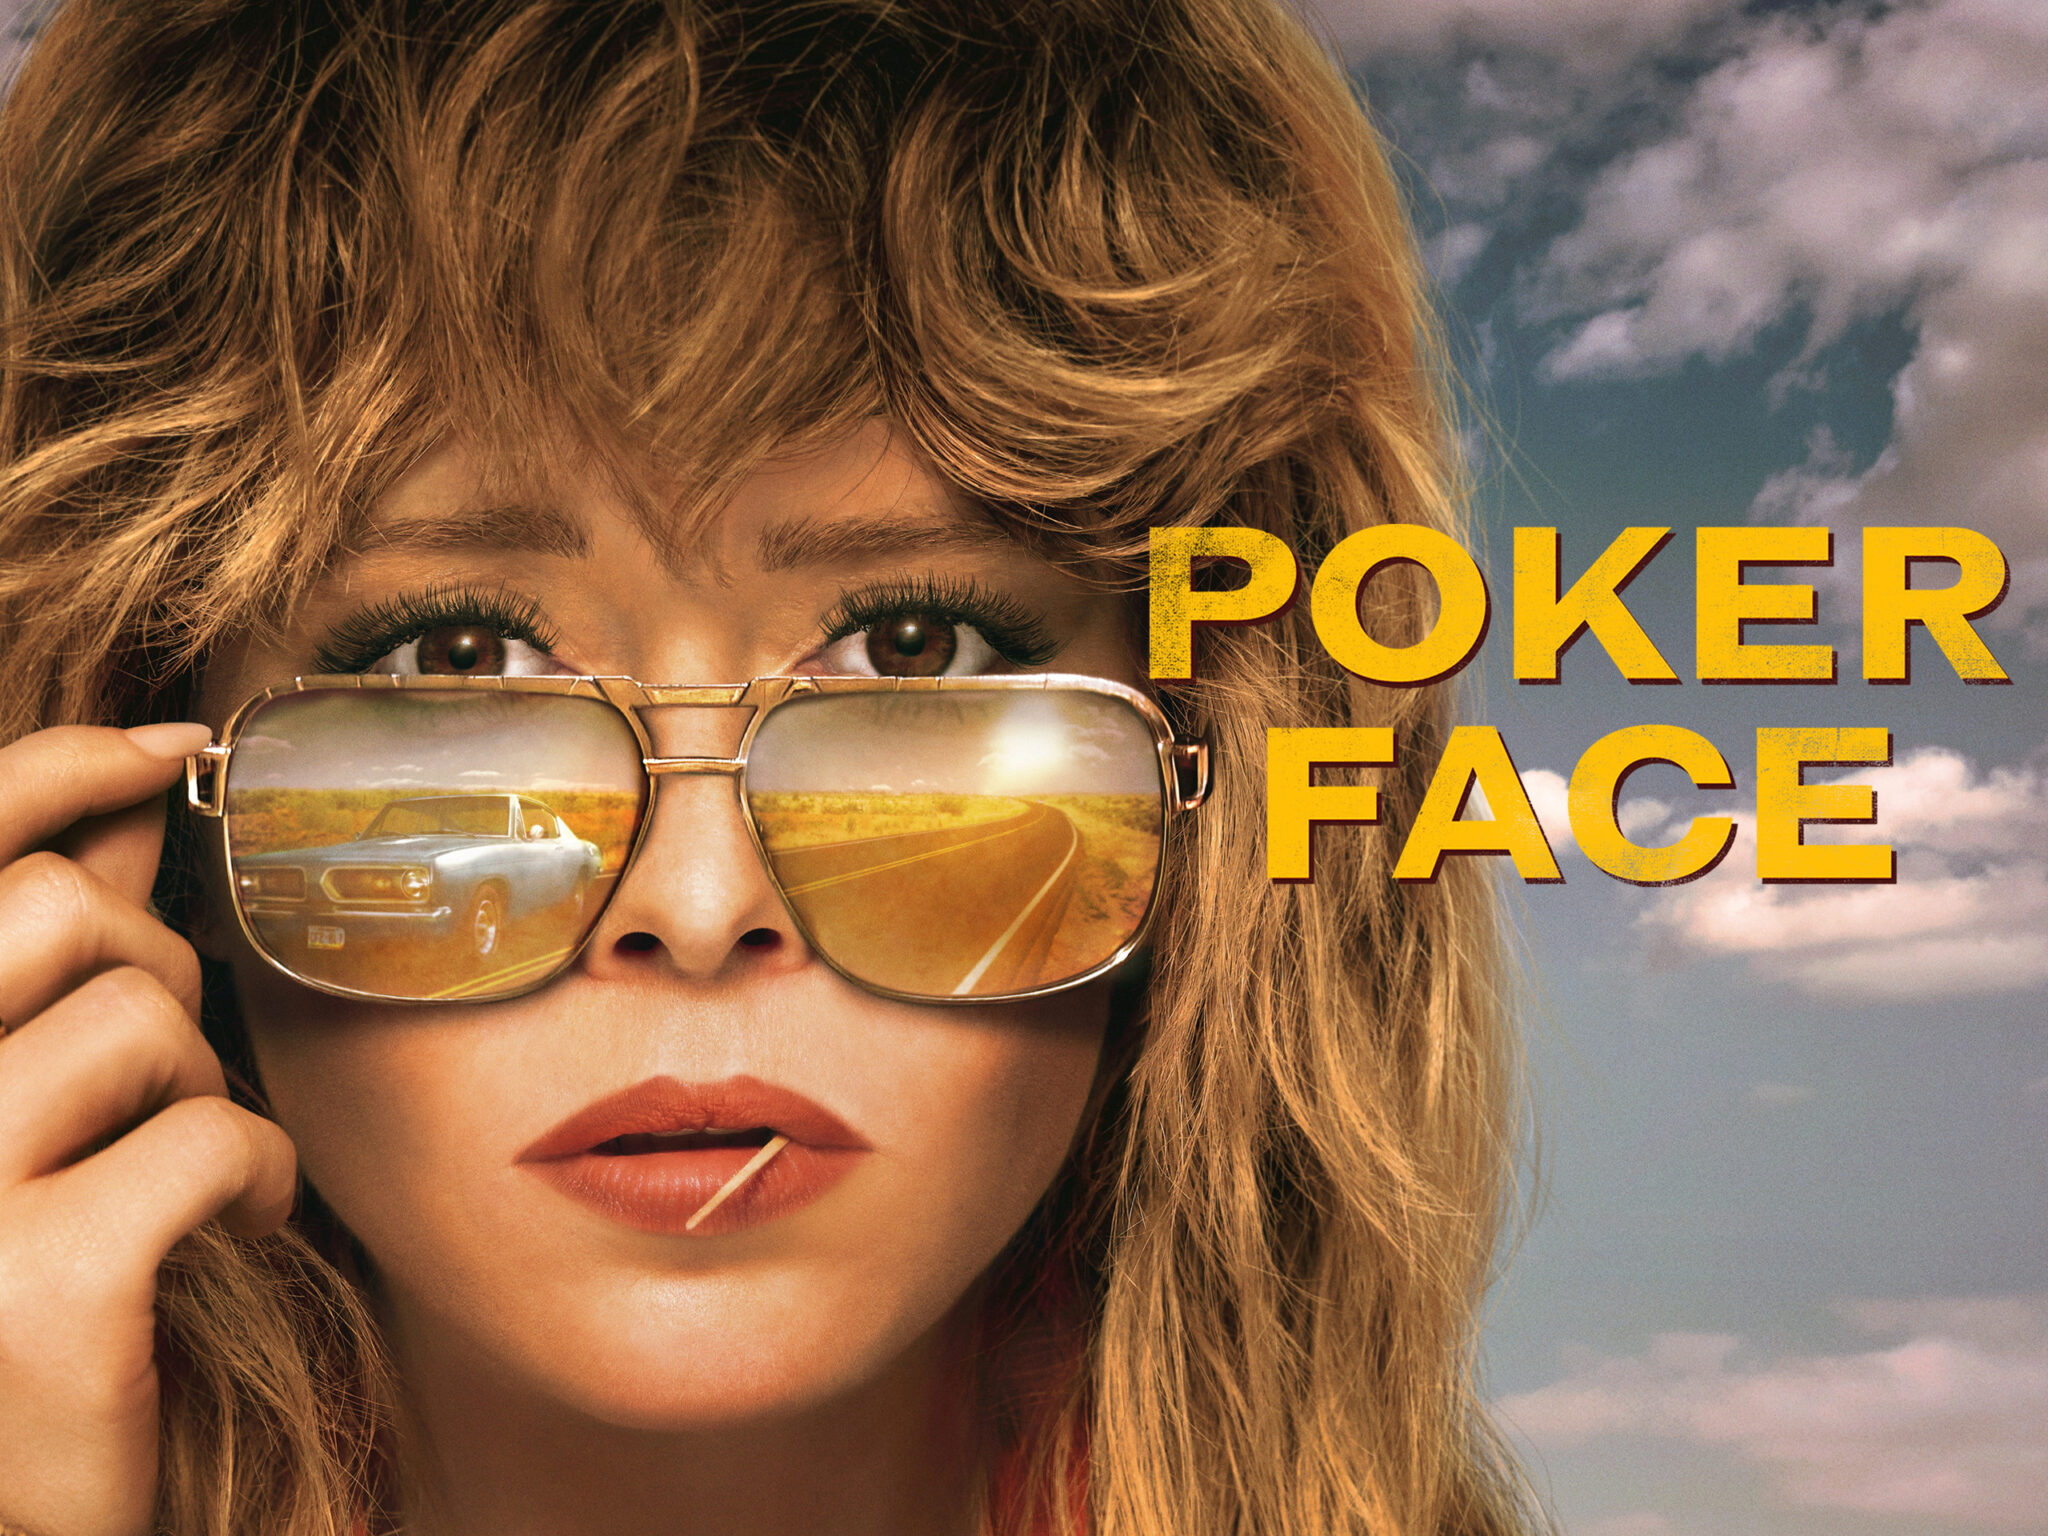 Das Poster zu Poker Face zeigt die Protagonistin mit Zahnstocher und Sonnenbrille, in der sich ein blaues Auto spiegelt.